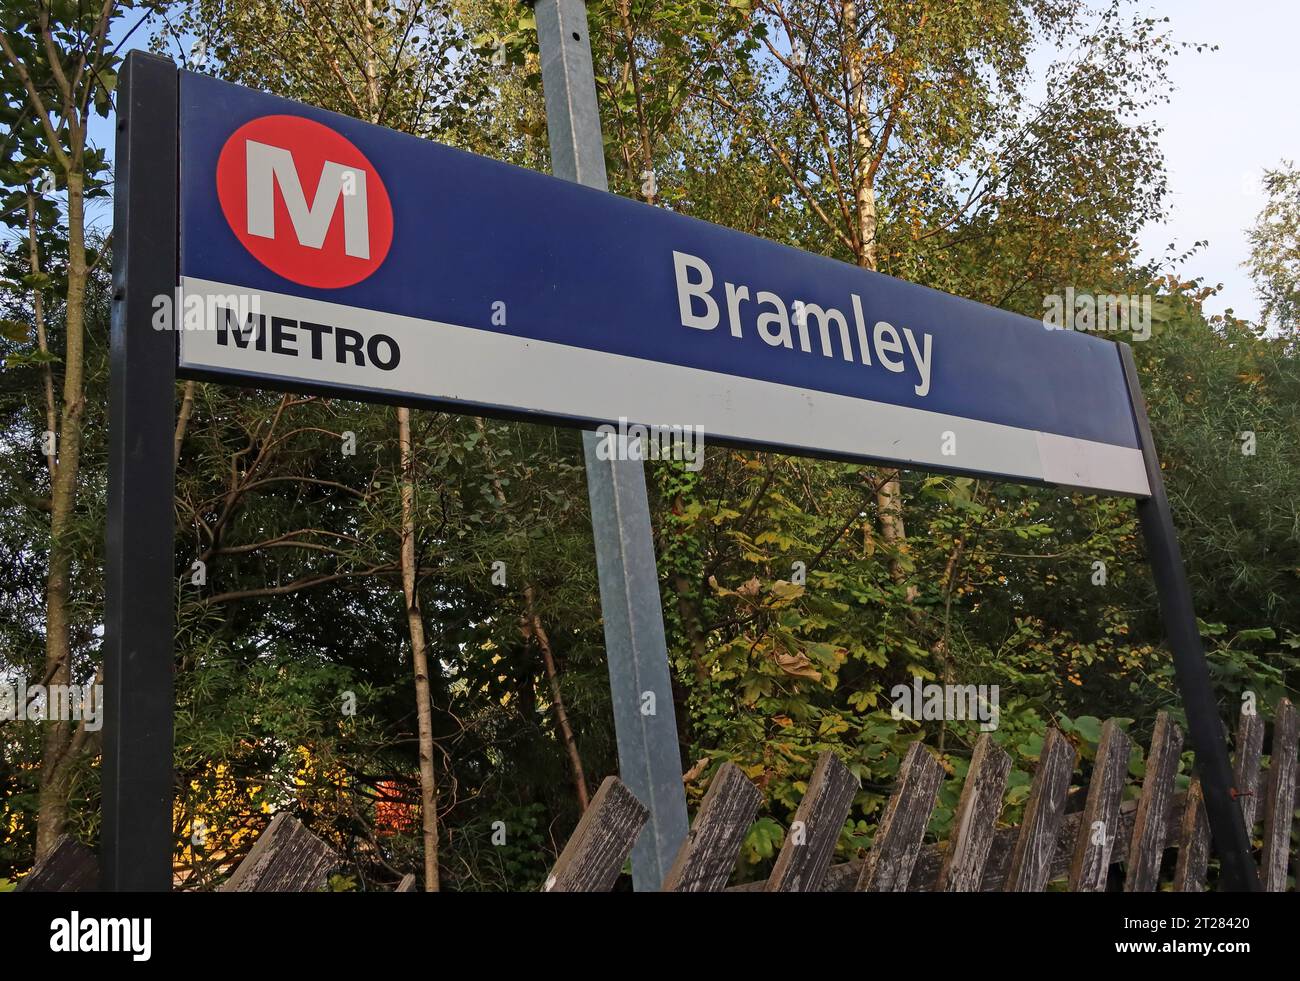 Gare de Bramley, qui fait partie du réseau de métro West Yorkshire, Swinnow Road, Bramley, West Yorkshire, LS13 4DU Banque D'Images